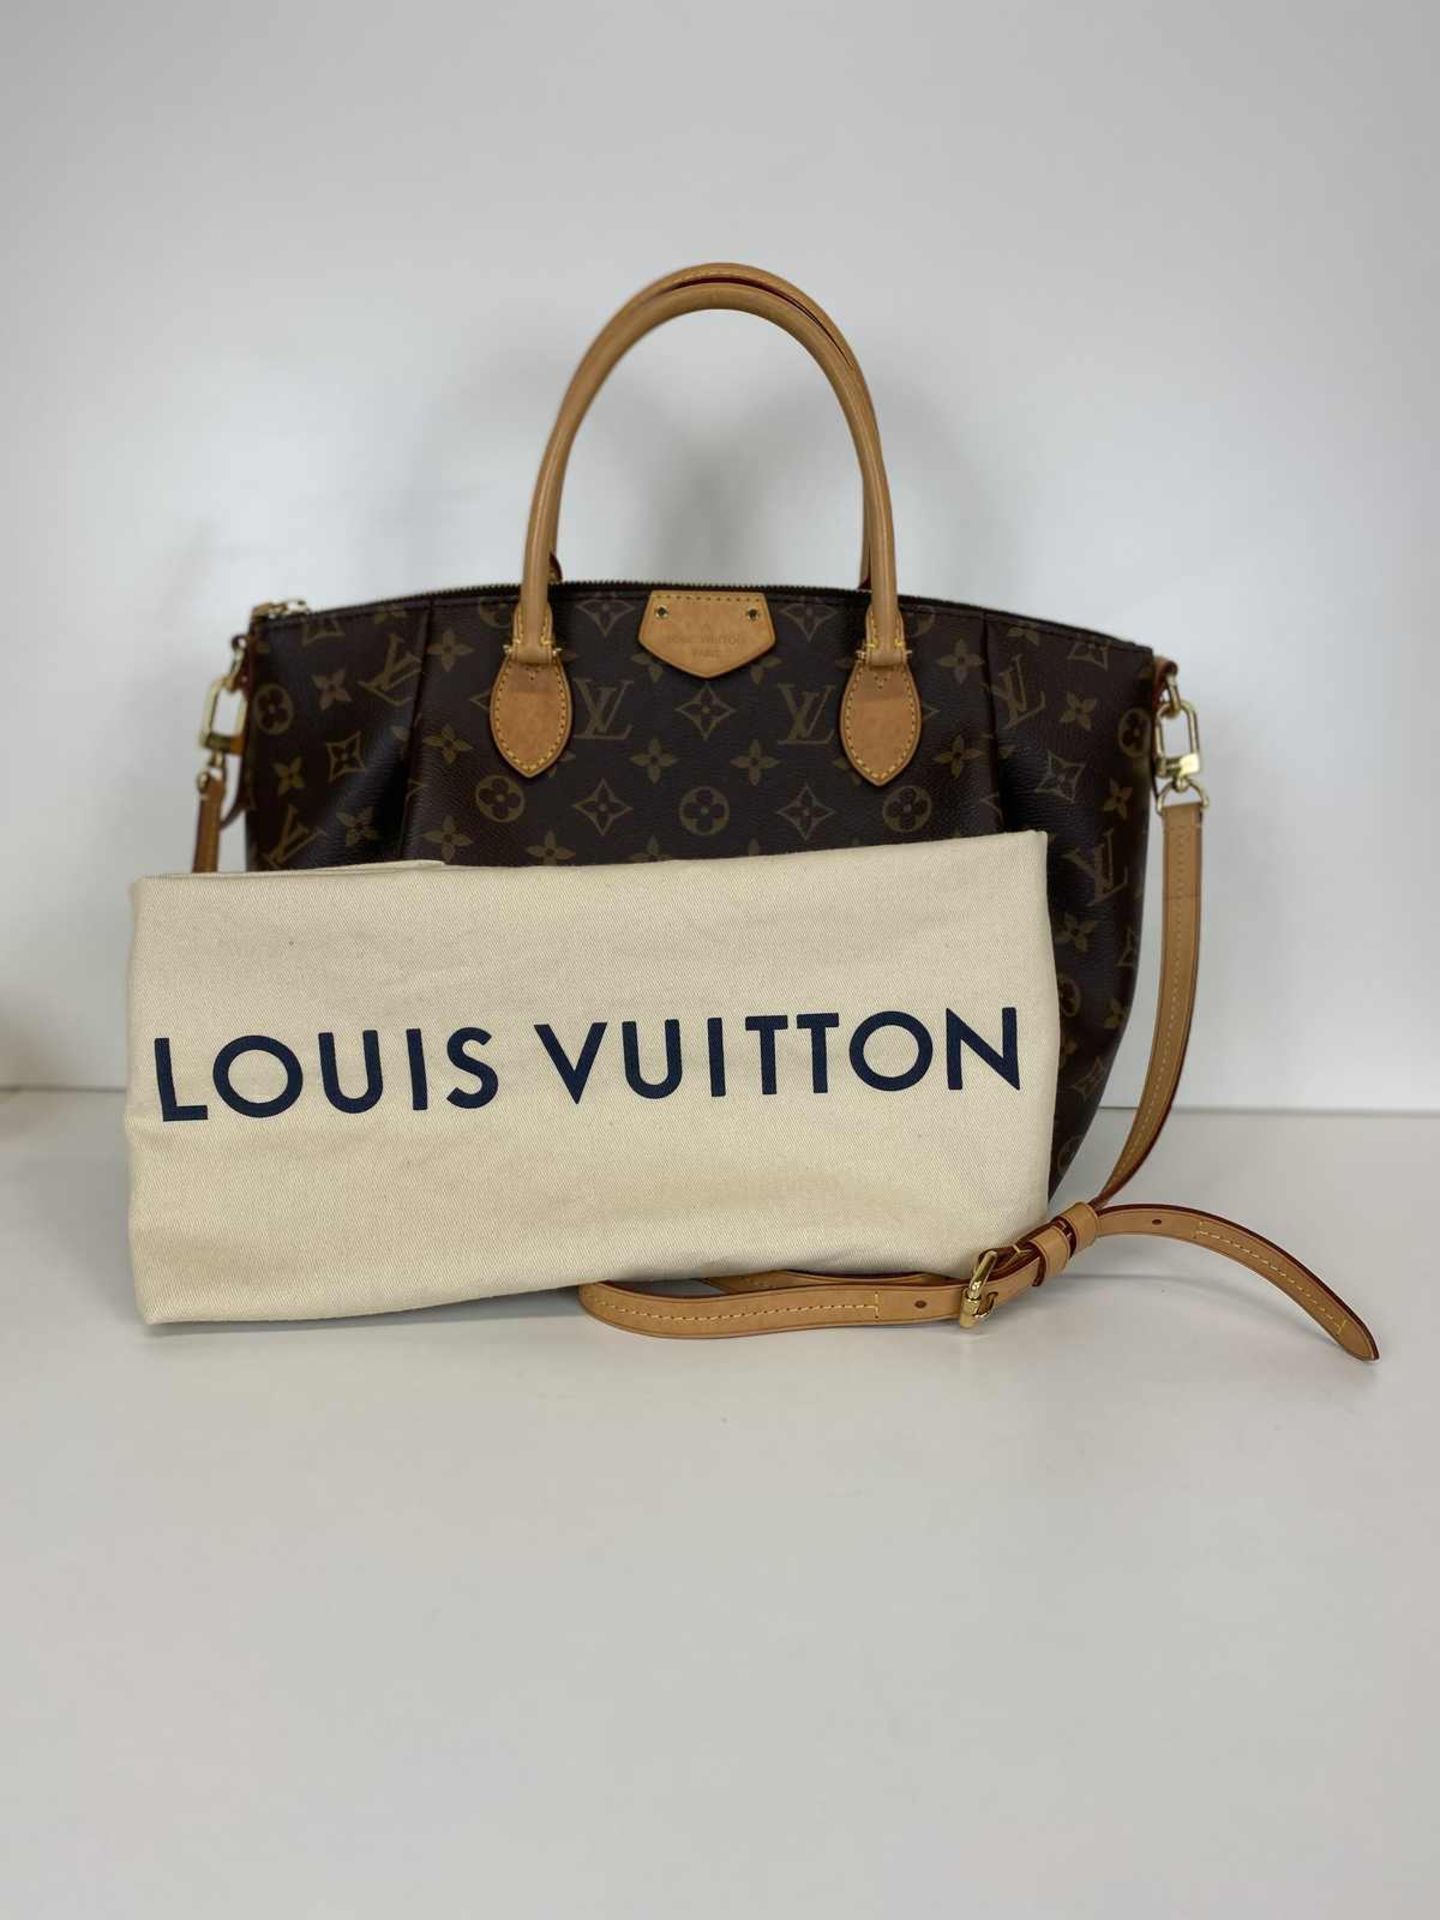 LOUIS VUITTON Handtasche Modell Turenne, Monogram Canvas braun. Geräumige Henkeltasche mit - Bild 2 aus 6